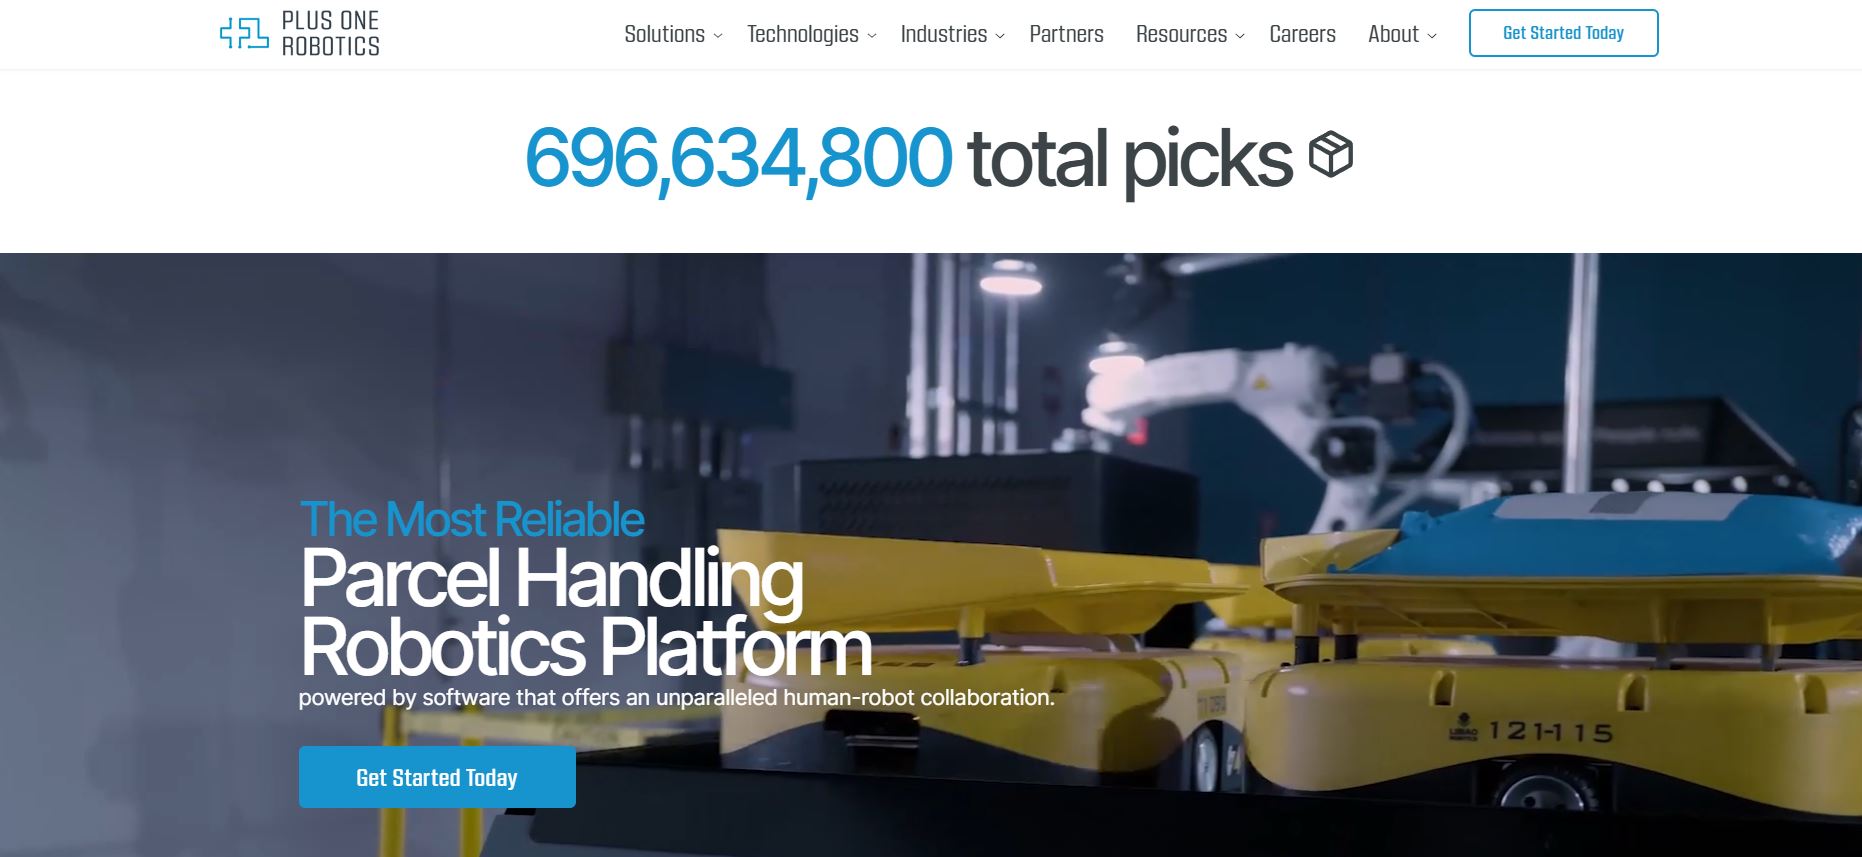 Plus One Robotics has raised $50M in Series C funding